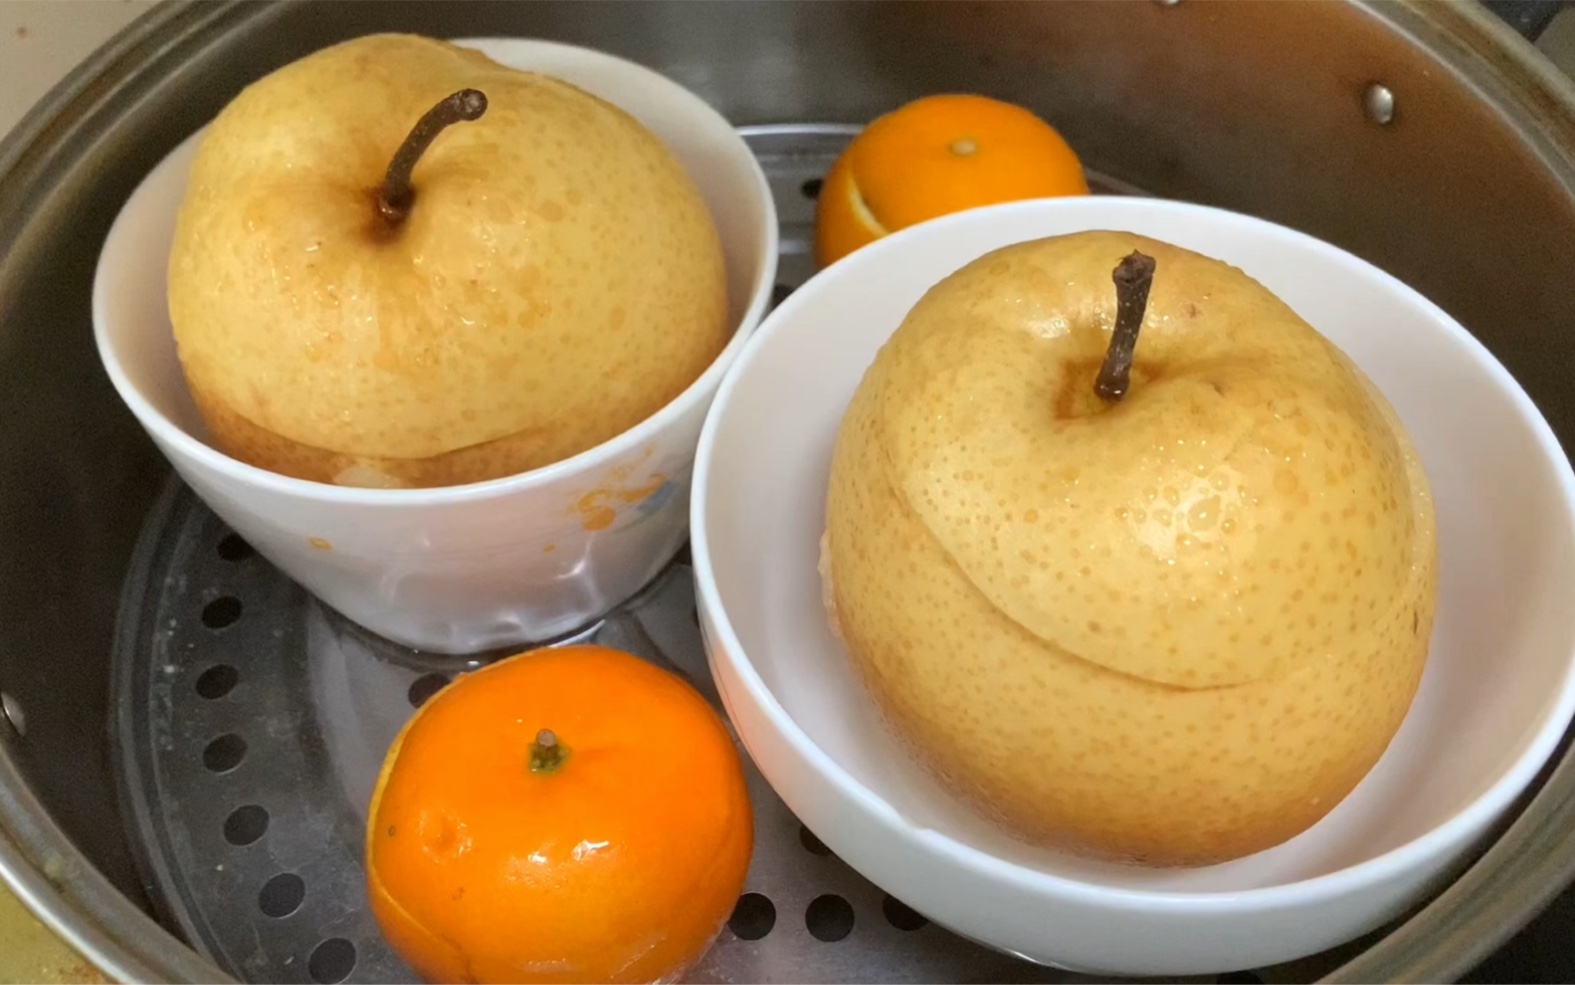 冰糖炖橙子怎么做_冰糖炖橙子的做法_尖尖实验室_豆果美食